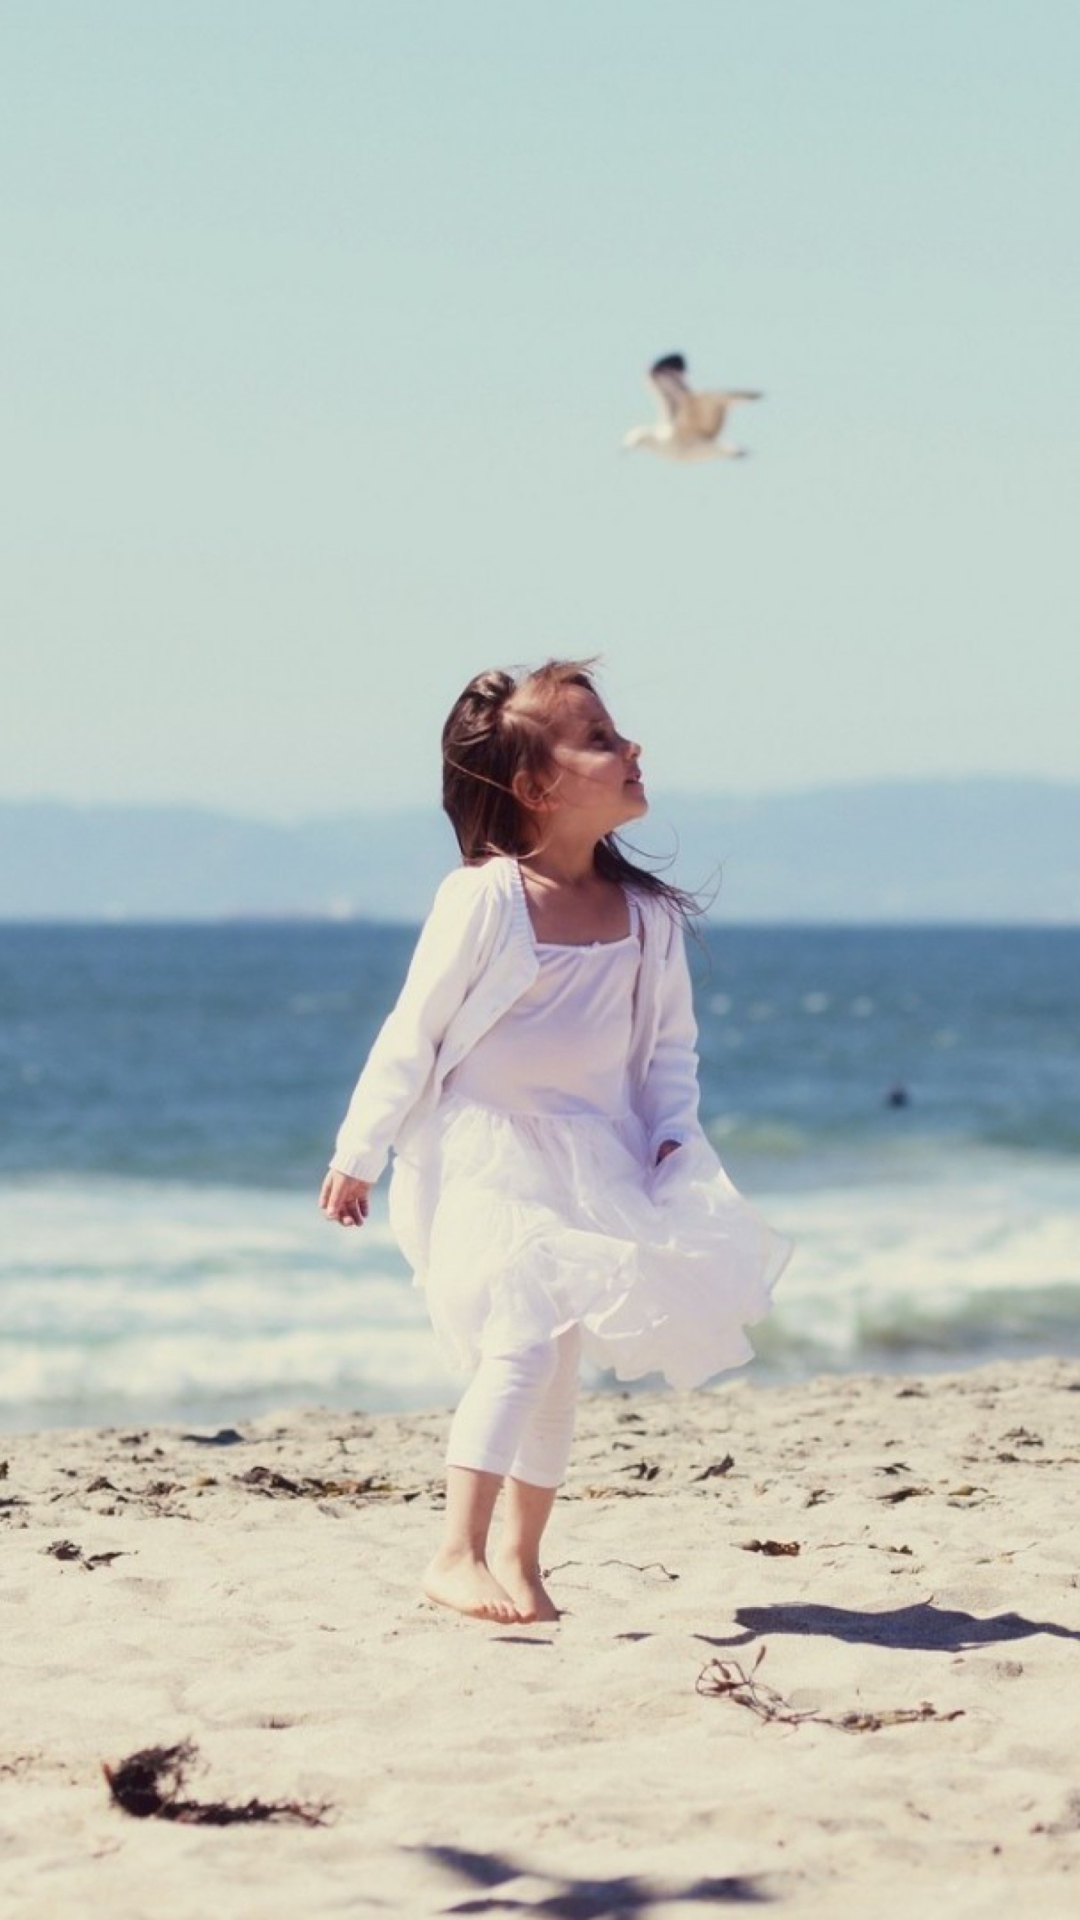 Little Girl And Seagulls On Beach screenshot #1 1080x1920